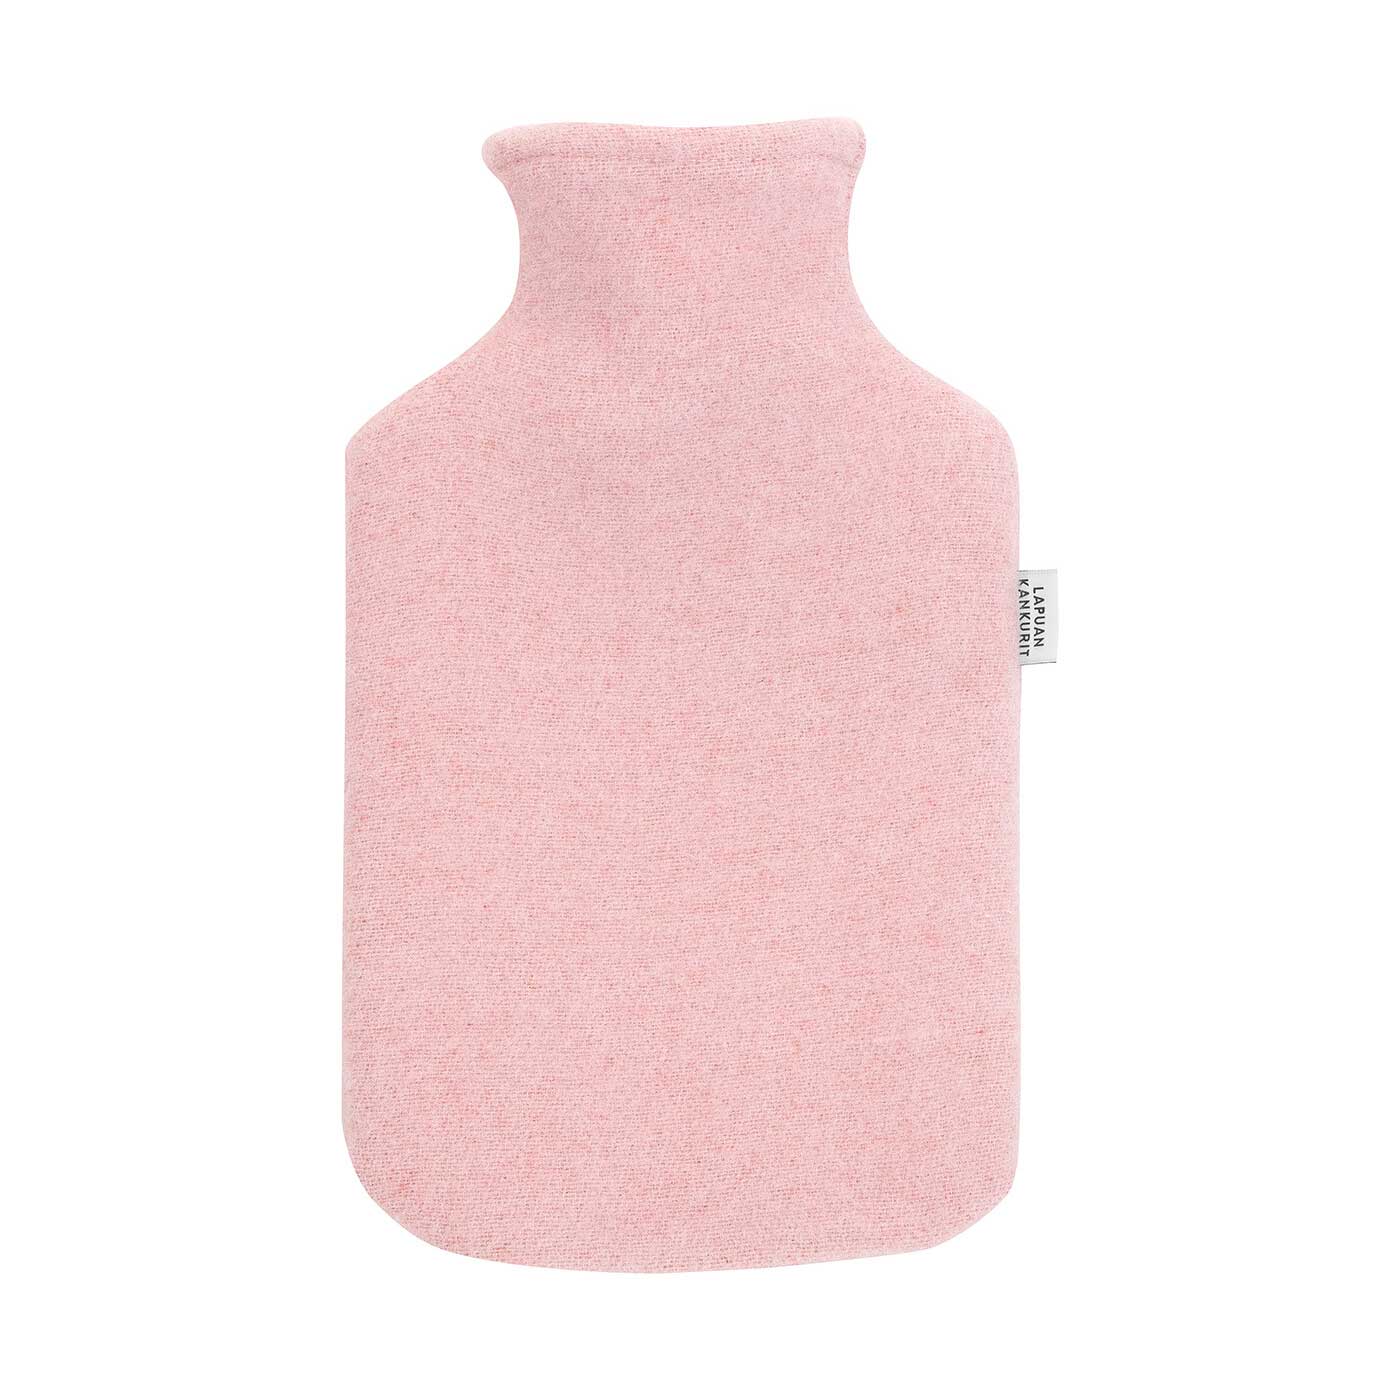 Lapuan Kankurit Wärmflasche TUPLA Farbe: rose, 100 % Wolle aus Finnland